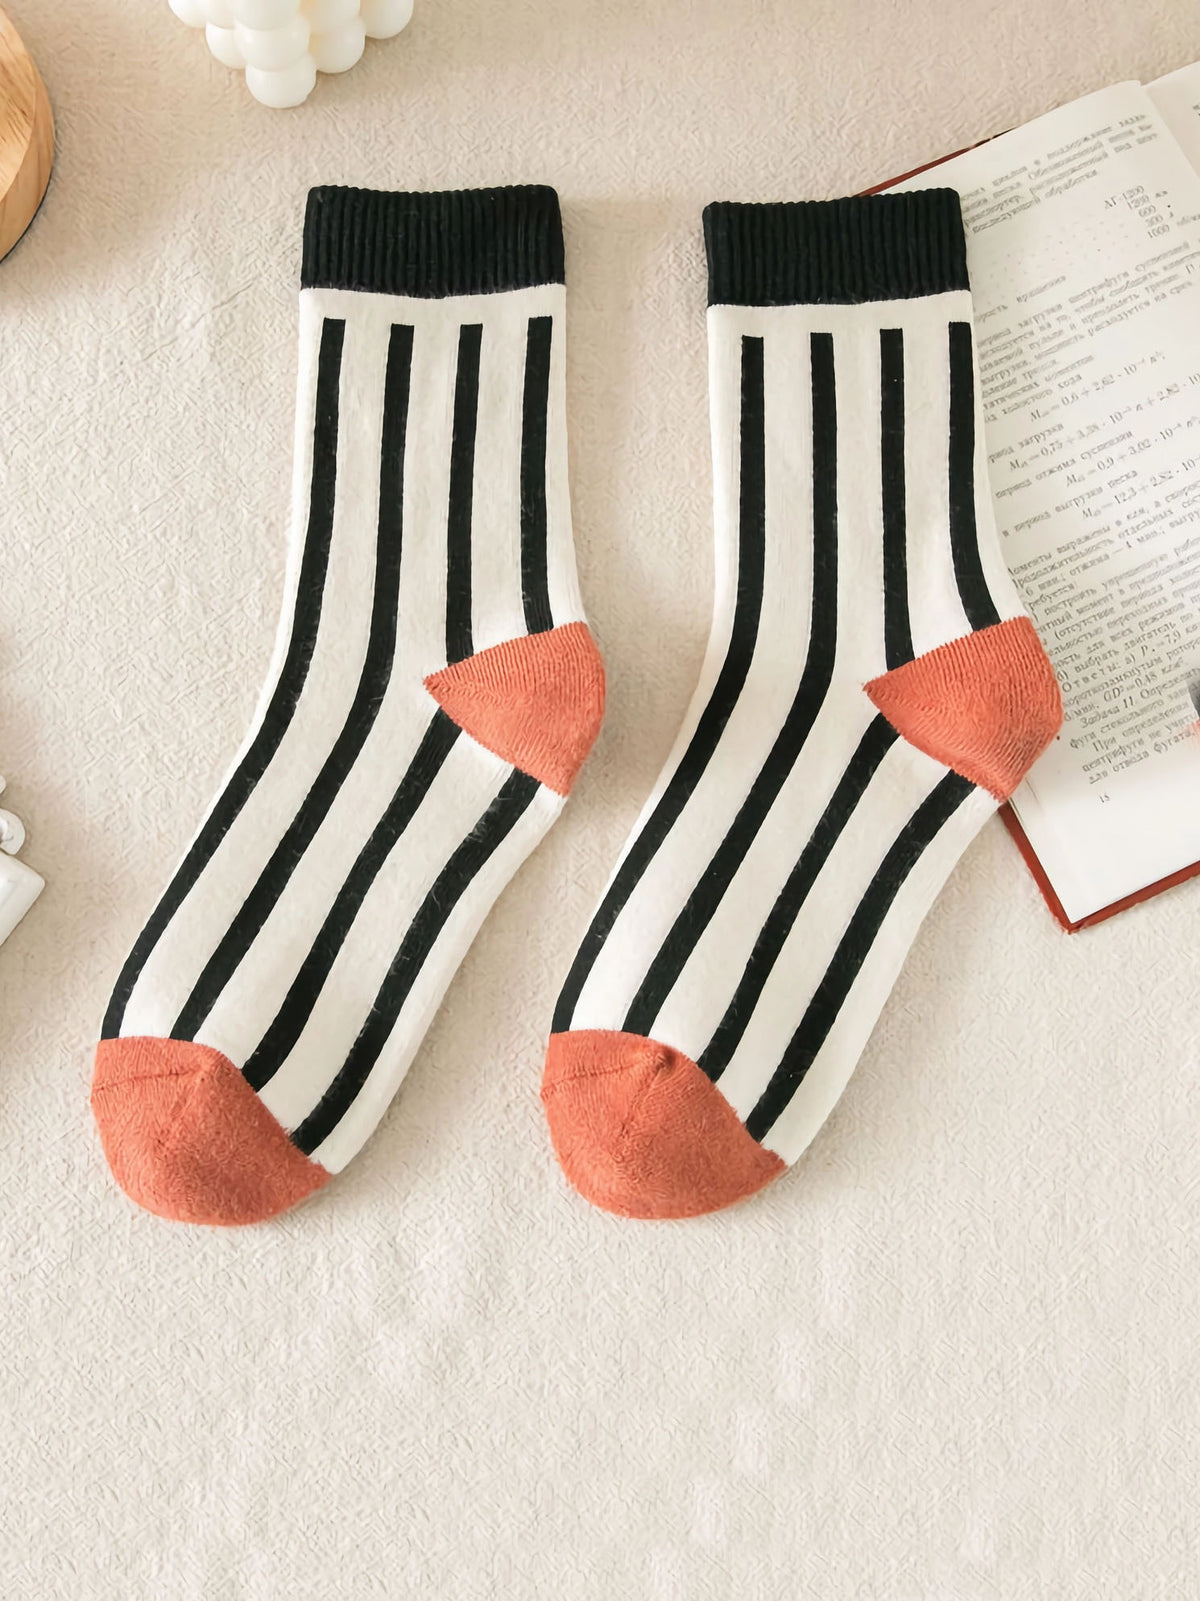 Socken in weiß mit schwarzen Streifen und Bündchen mit orangenem Zwickel und Ferse